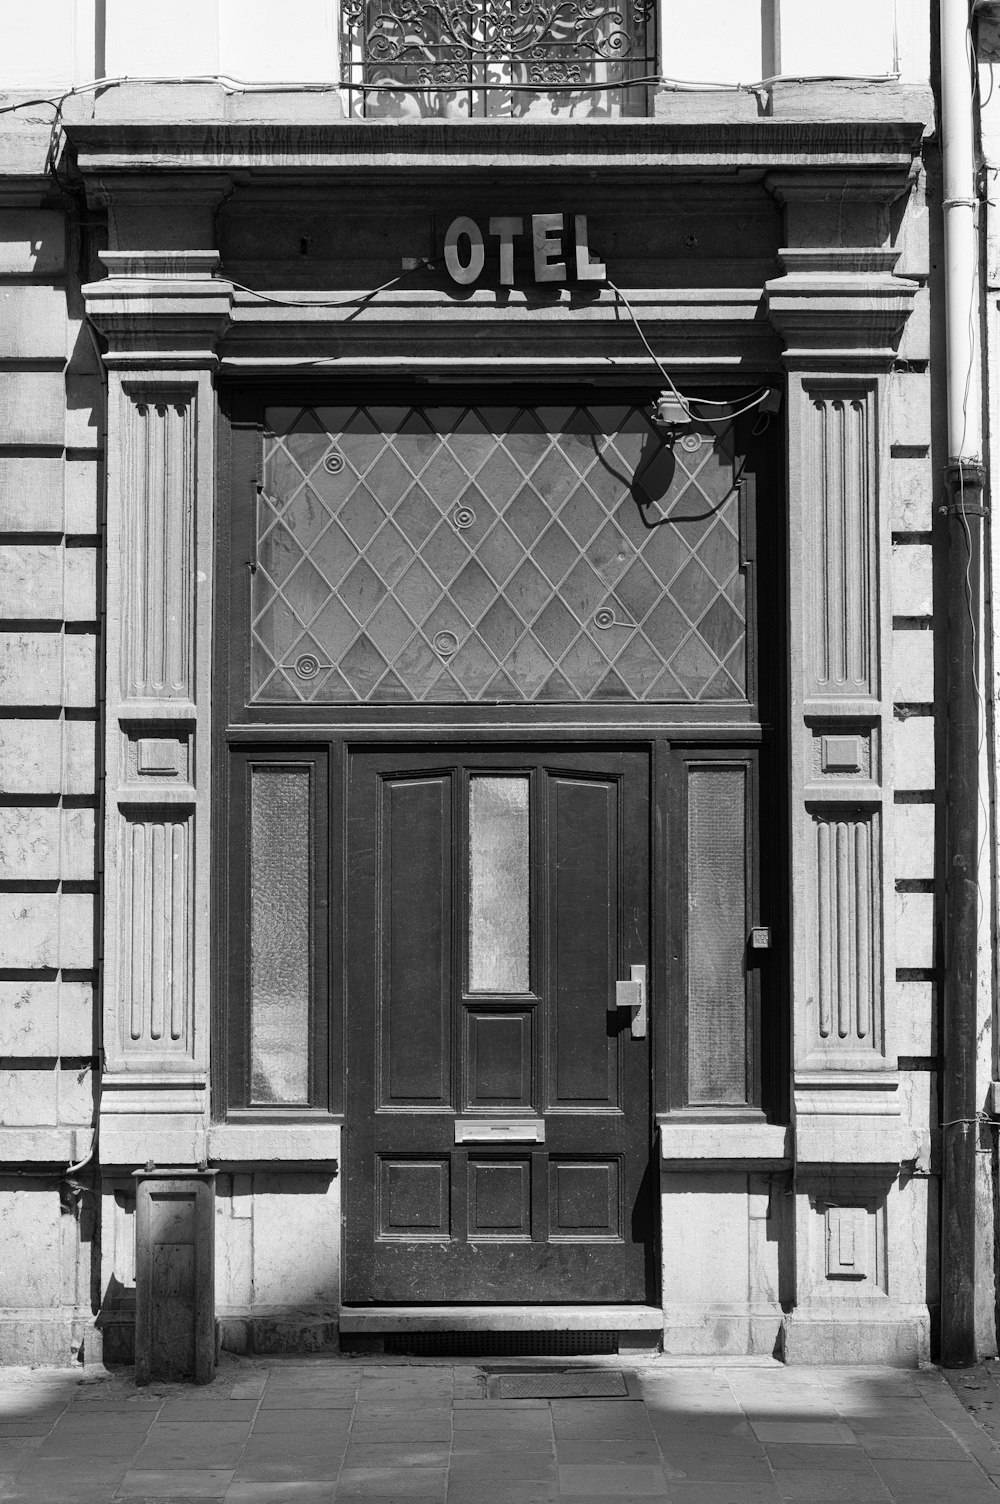 grayscale photo of Hotel building front door